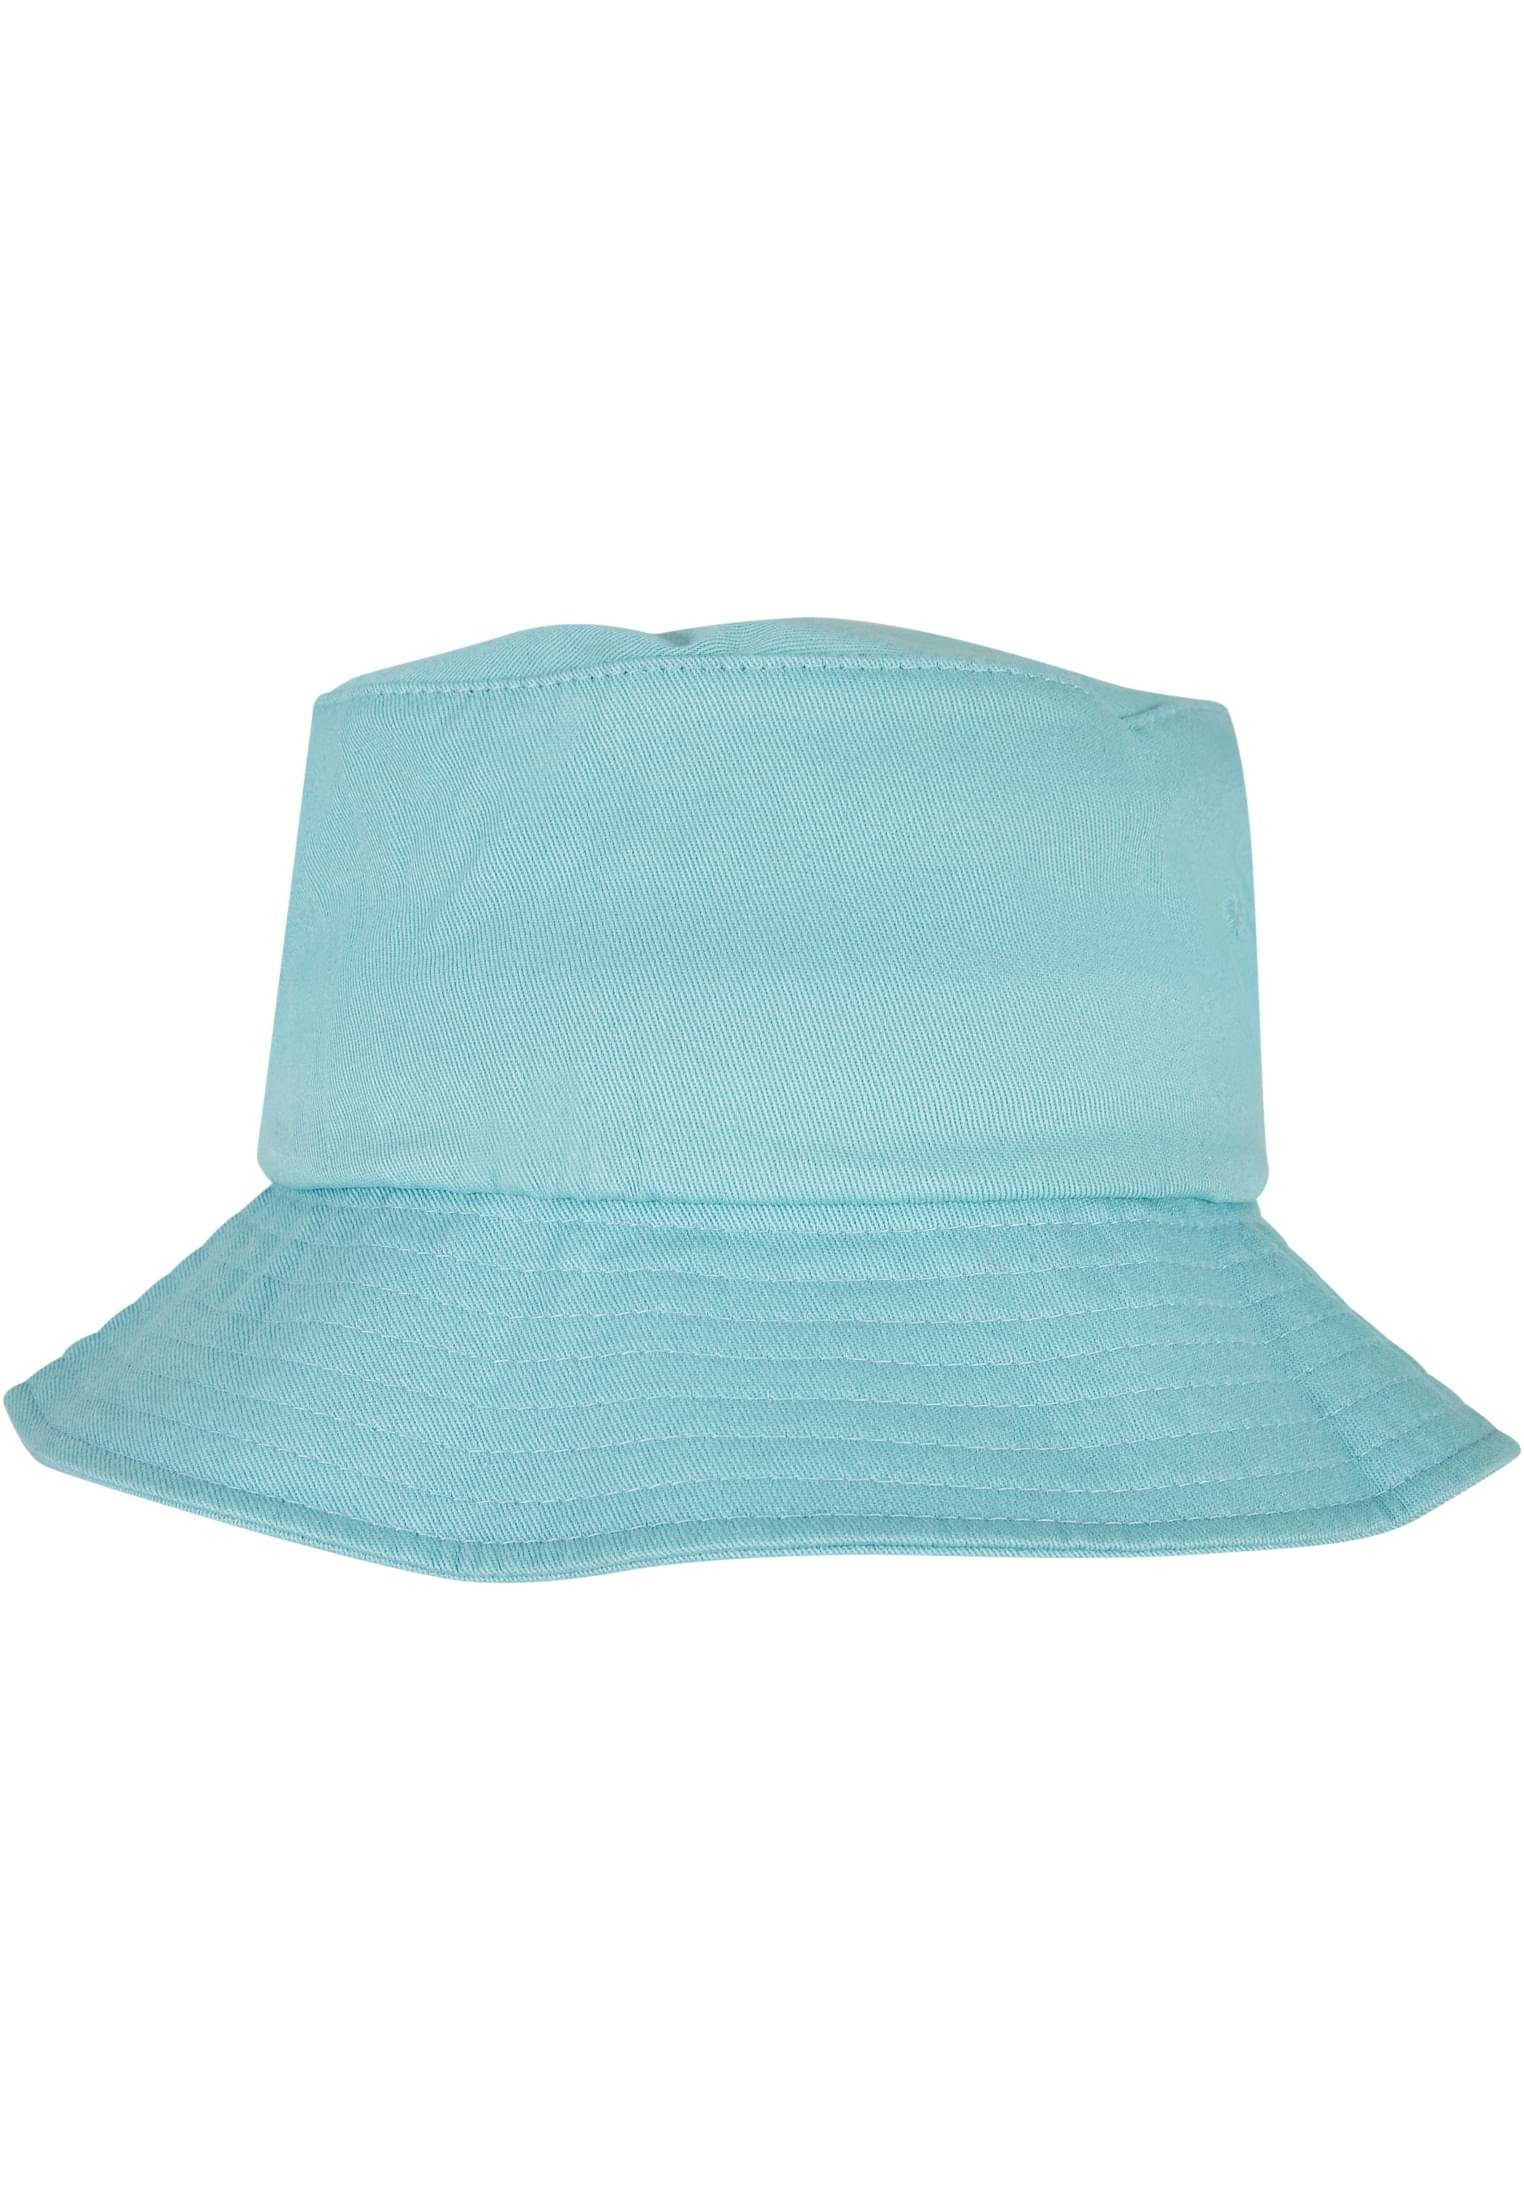 Twill Flexfit Cotton Accessoires Flexfit airblue Flex Cap Bucket Hat